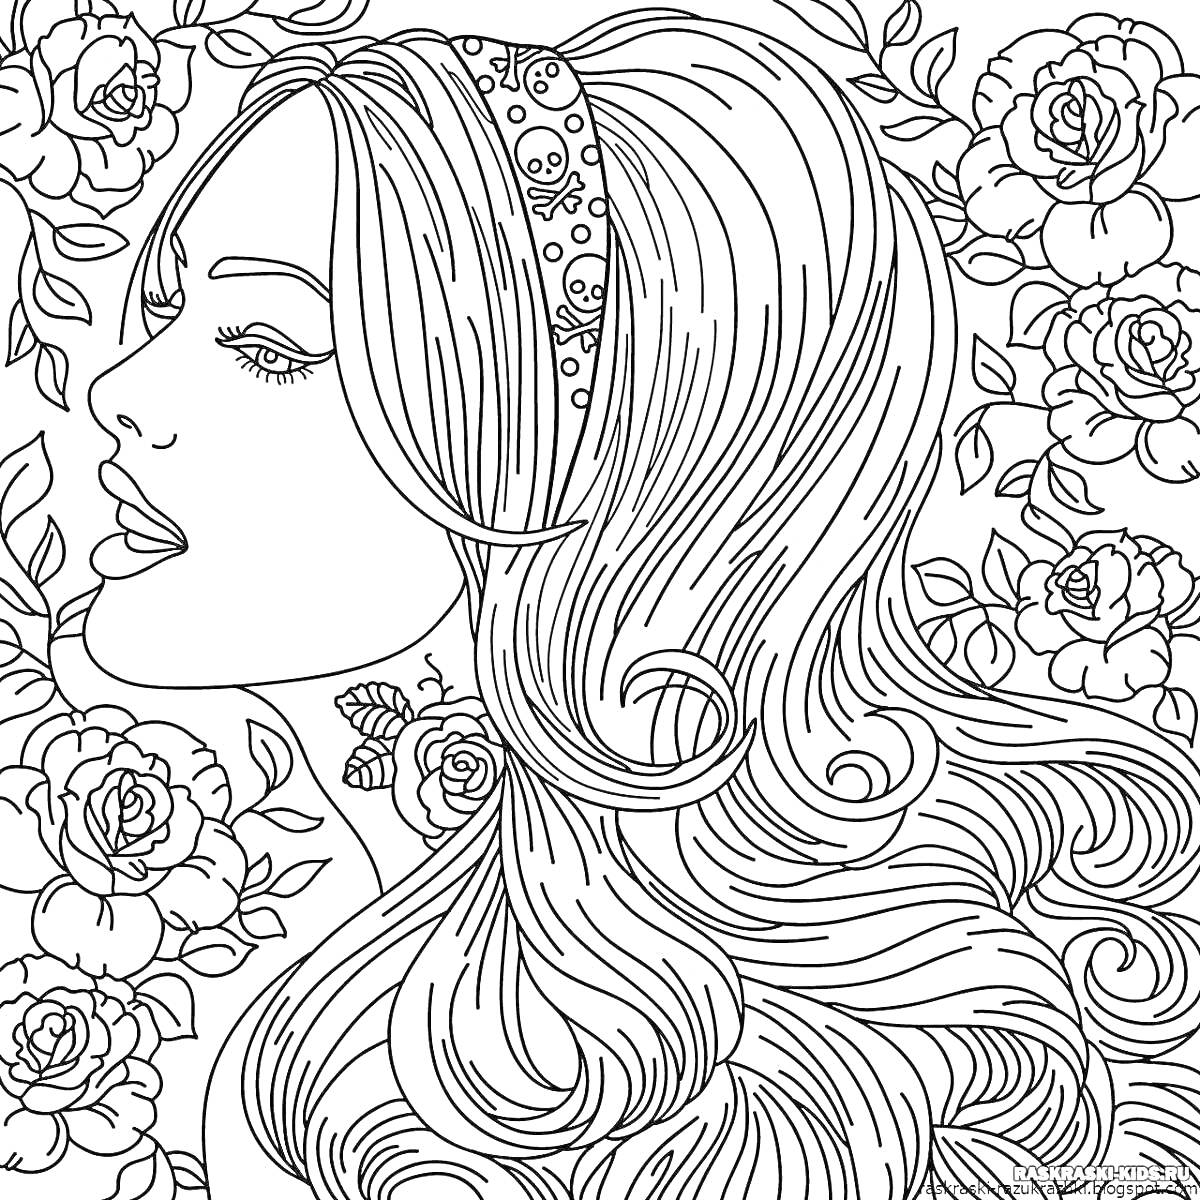 Раскраска Профиль девушки с длинными волосами и повязкой на голове на фоне роз и листьев